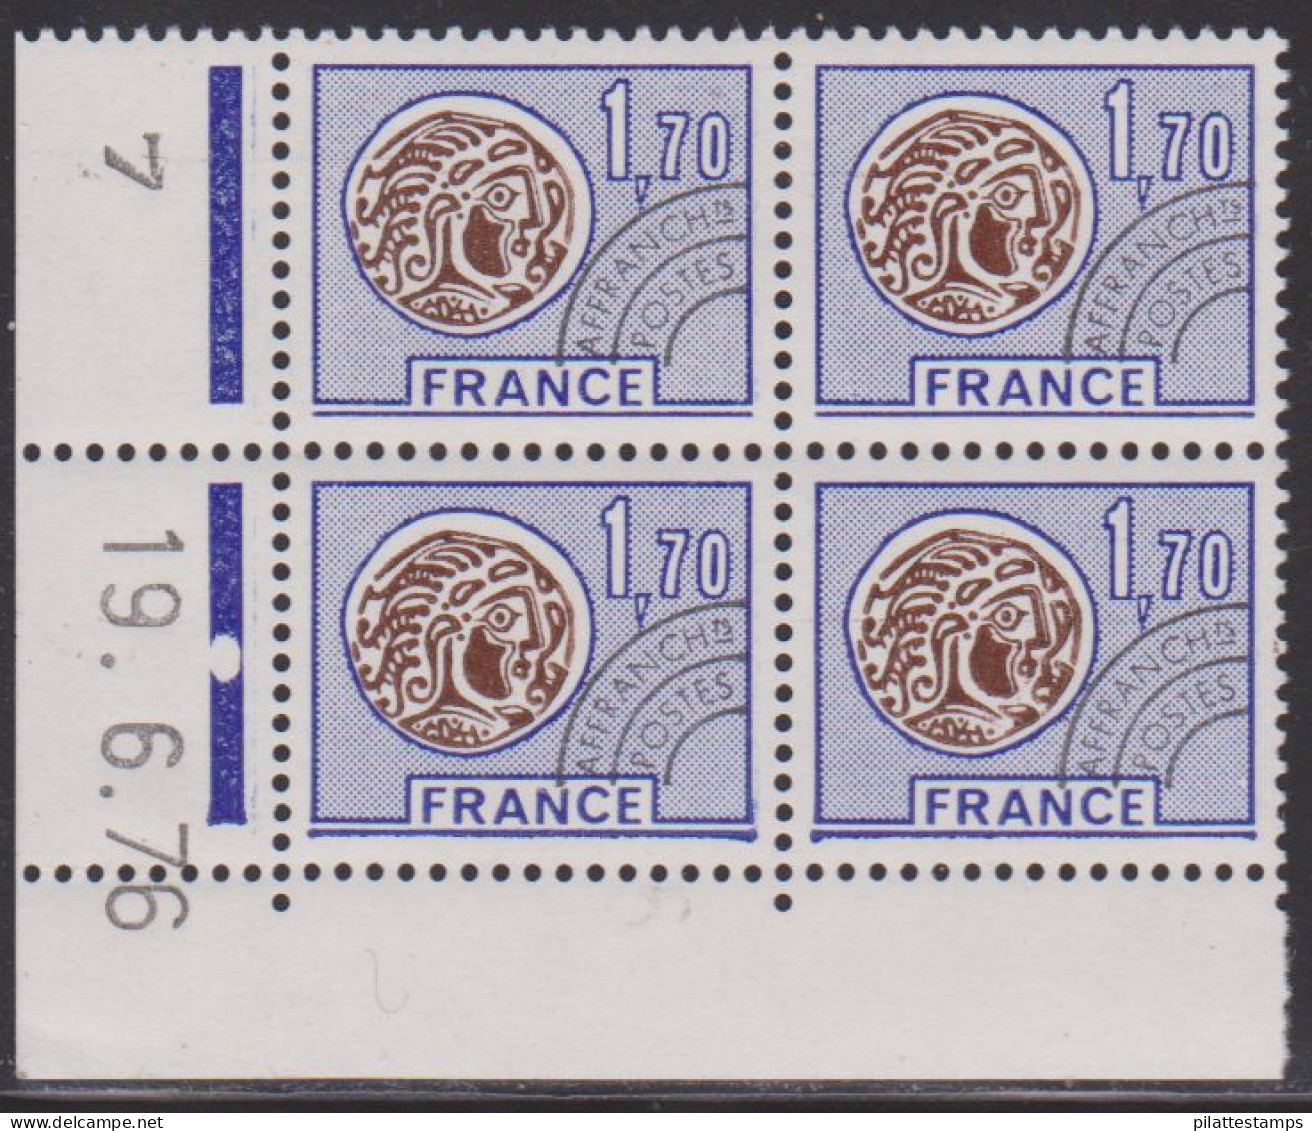 FRANCE PREOBLITERE N° 145** MONNAIE GAULOISE COIN DATE DU 19/6/76 - Precancels